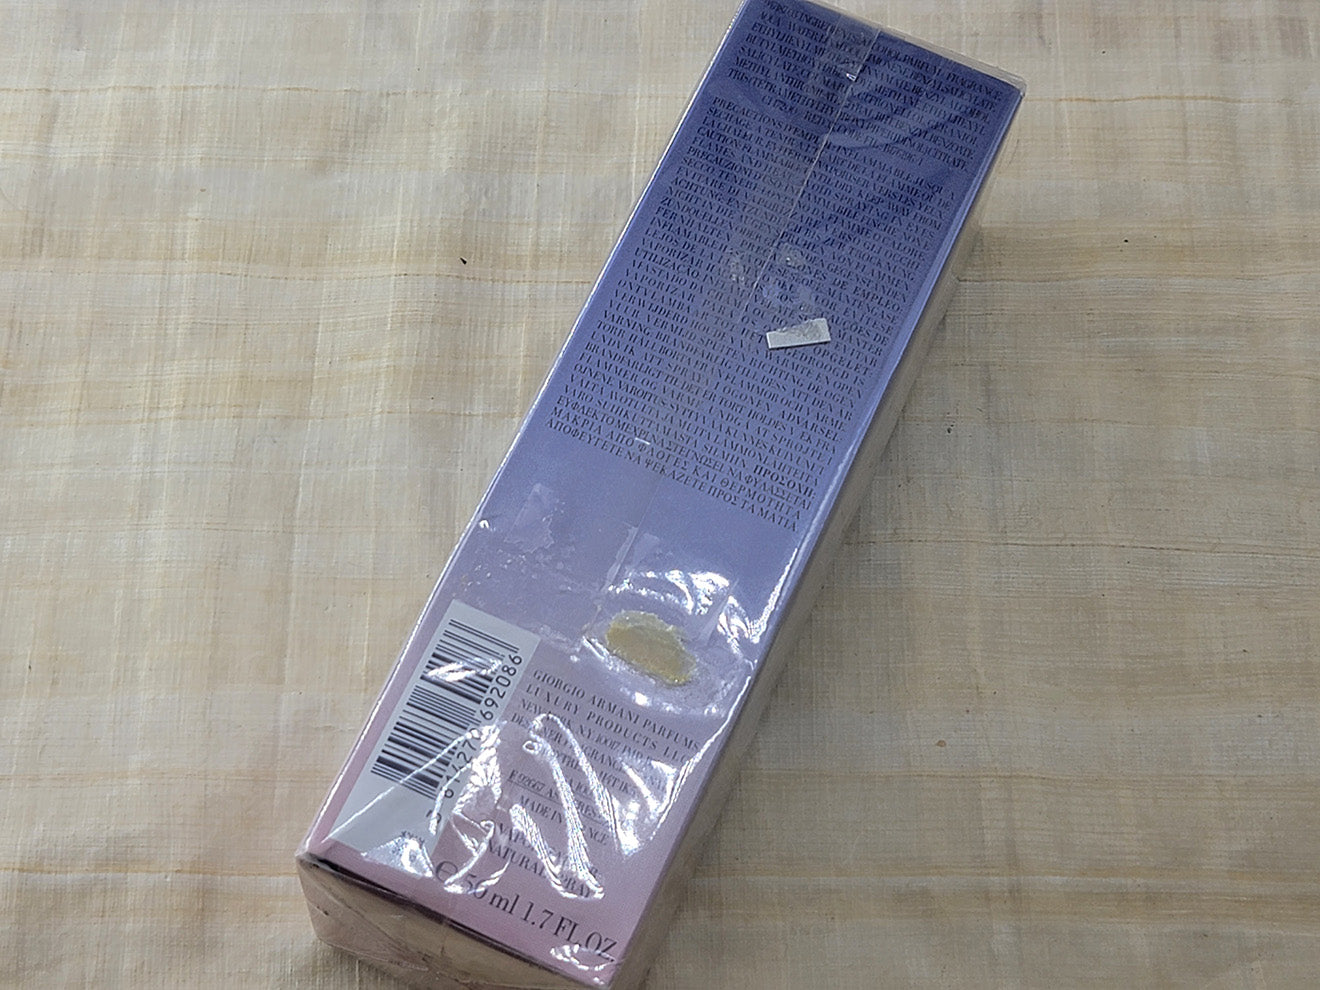 Armani Code Satin Giorgio Armani for women EDP Spray 50 ml 1.7 oz, Rare, Vintage, Sealed